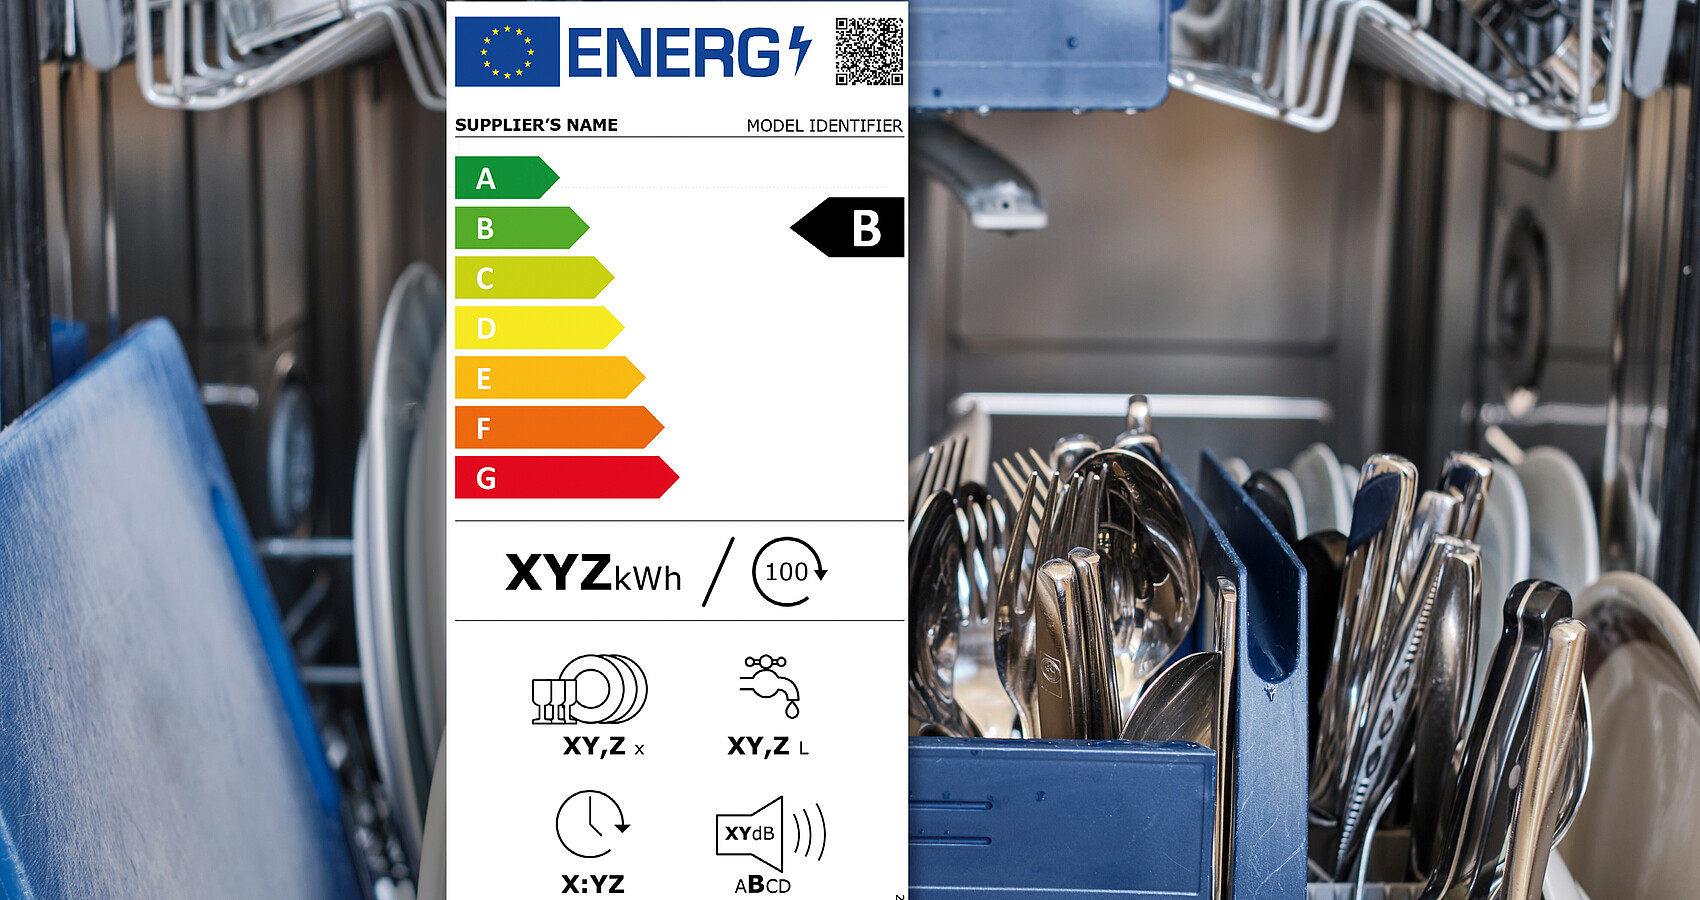 Das Foto zeigt eine offene Geschirrspülmaschine und das neue Energielabel der EU